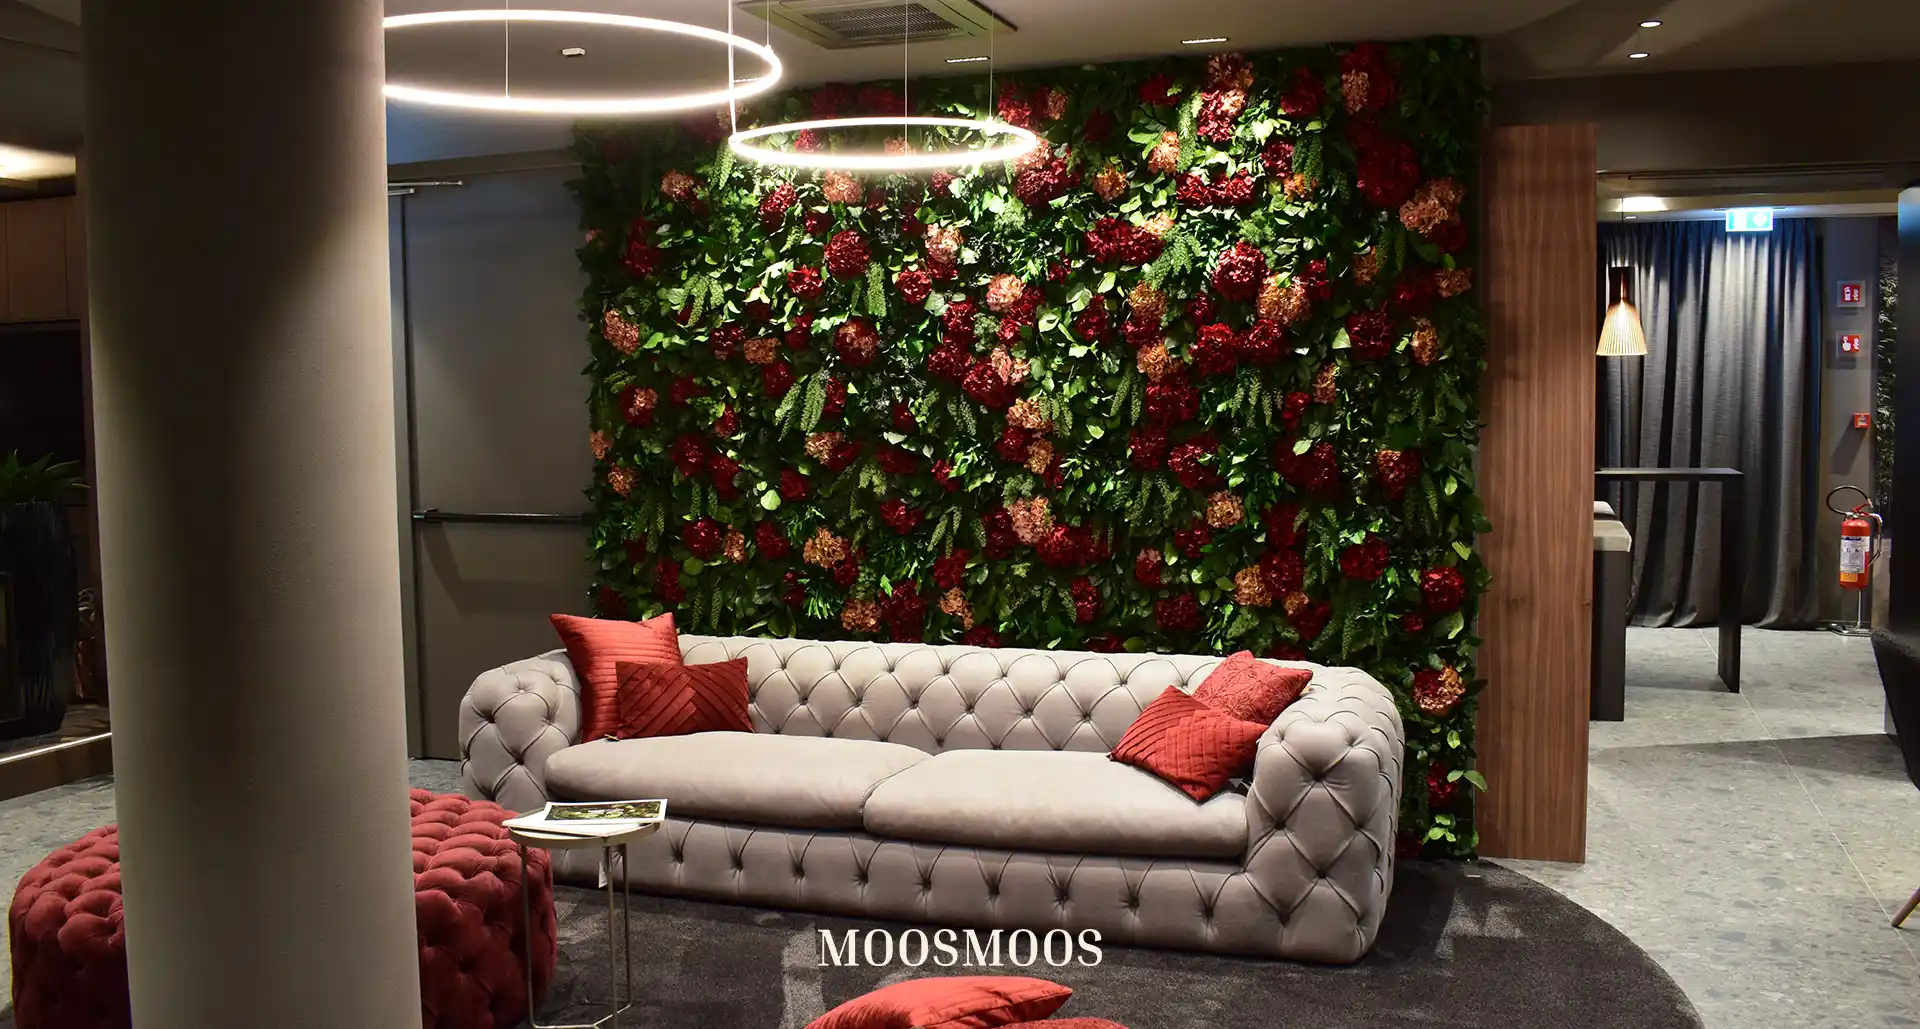 MOOSMOOS Blumenwand / Flowerwall mit echten Blumen, Pflanzen und Moosen im Wohnzimmer